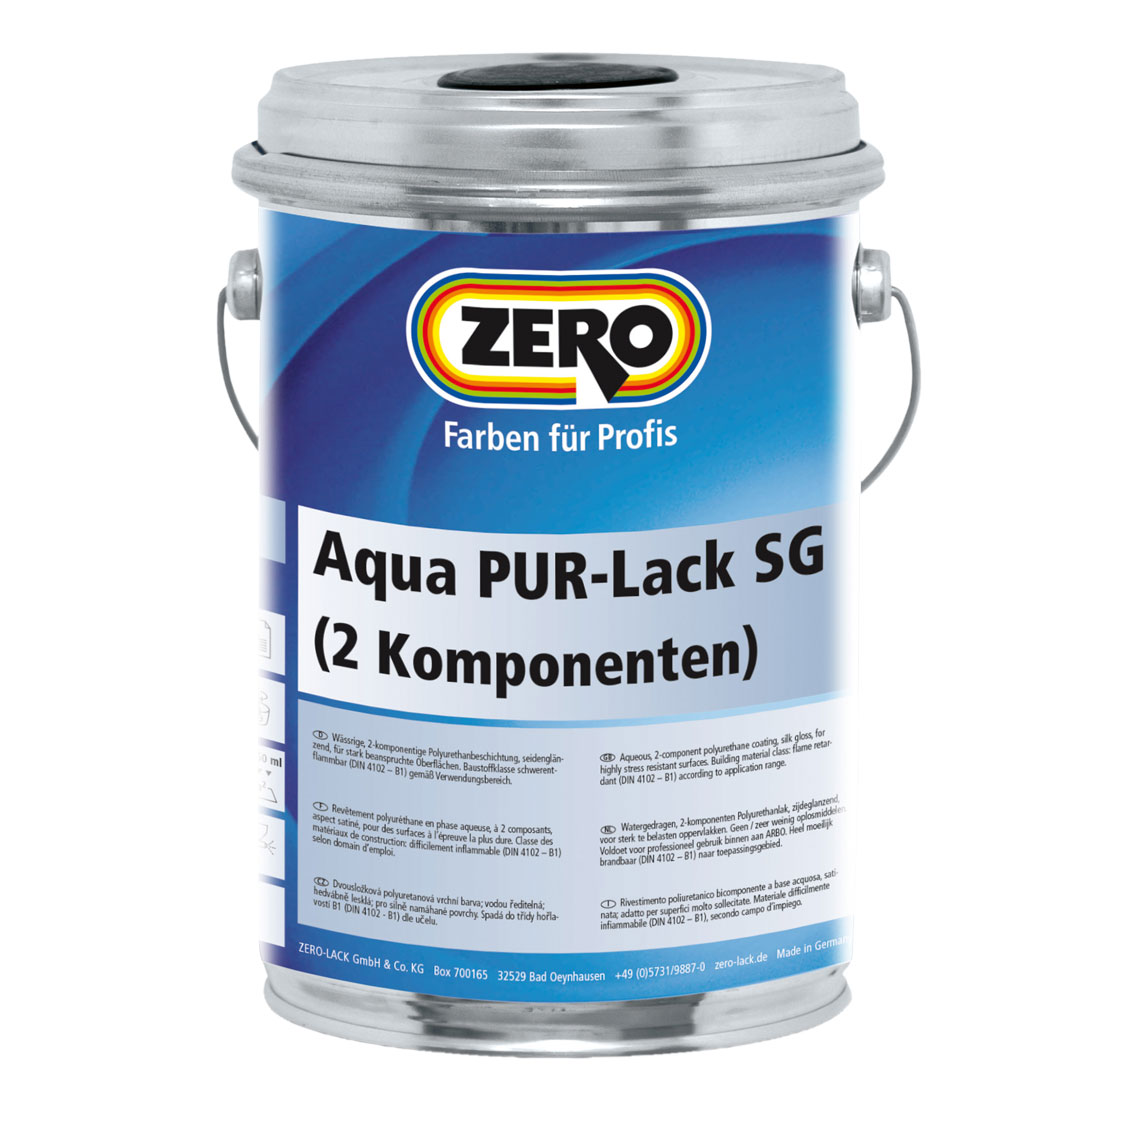 ZERO-LACK Aqua PUR-Lack SG, Farblos